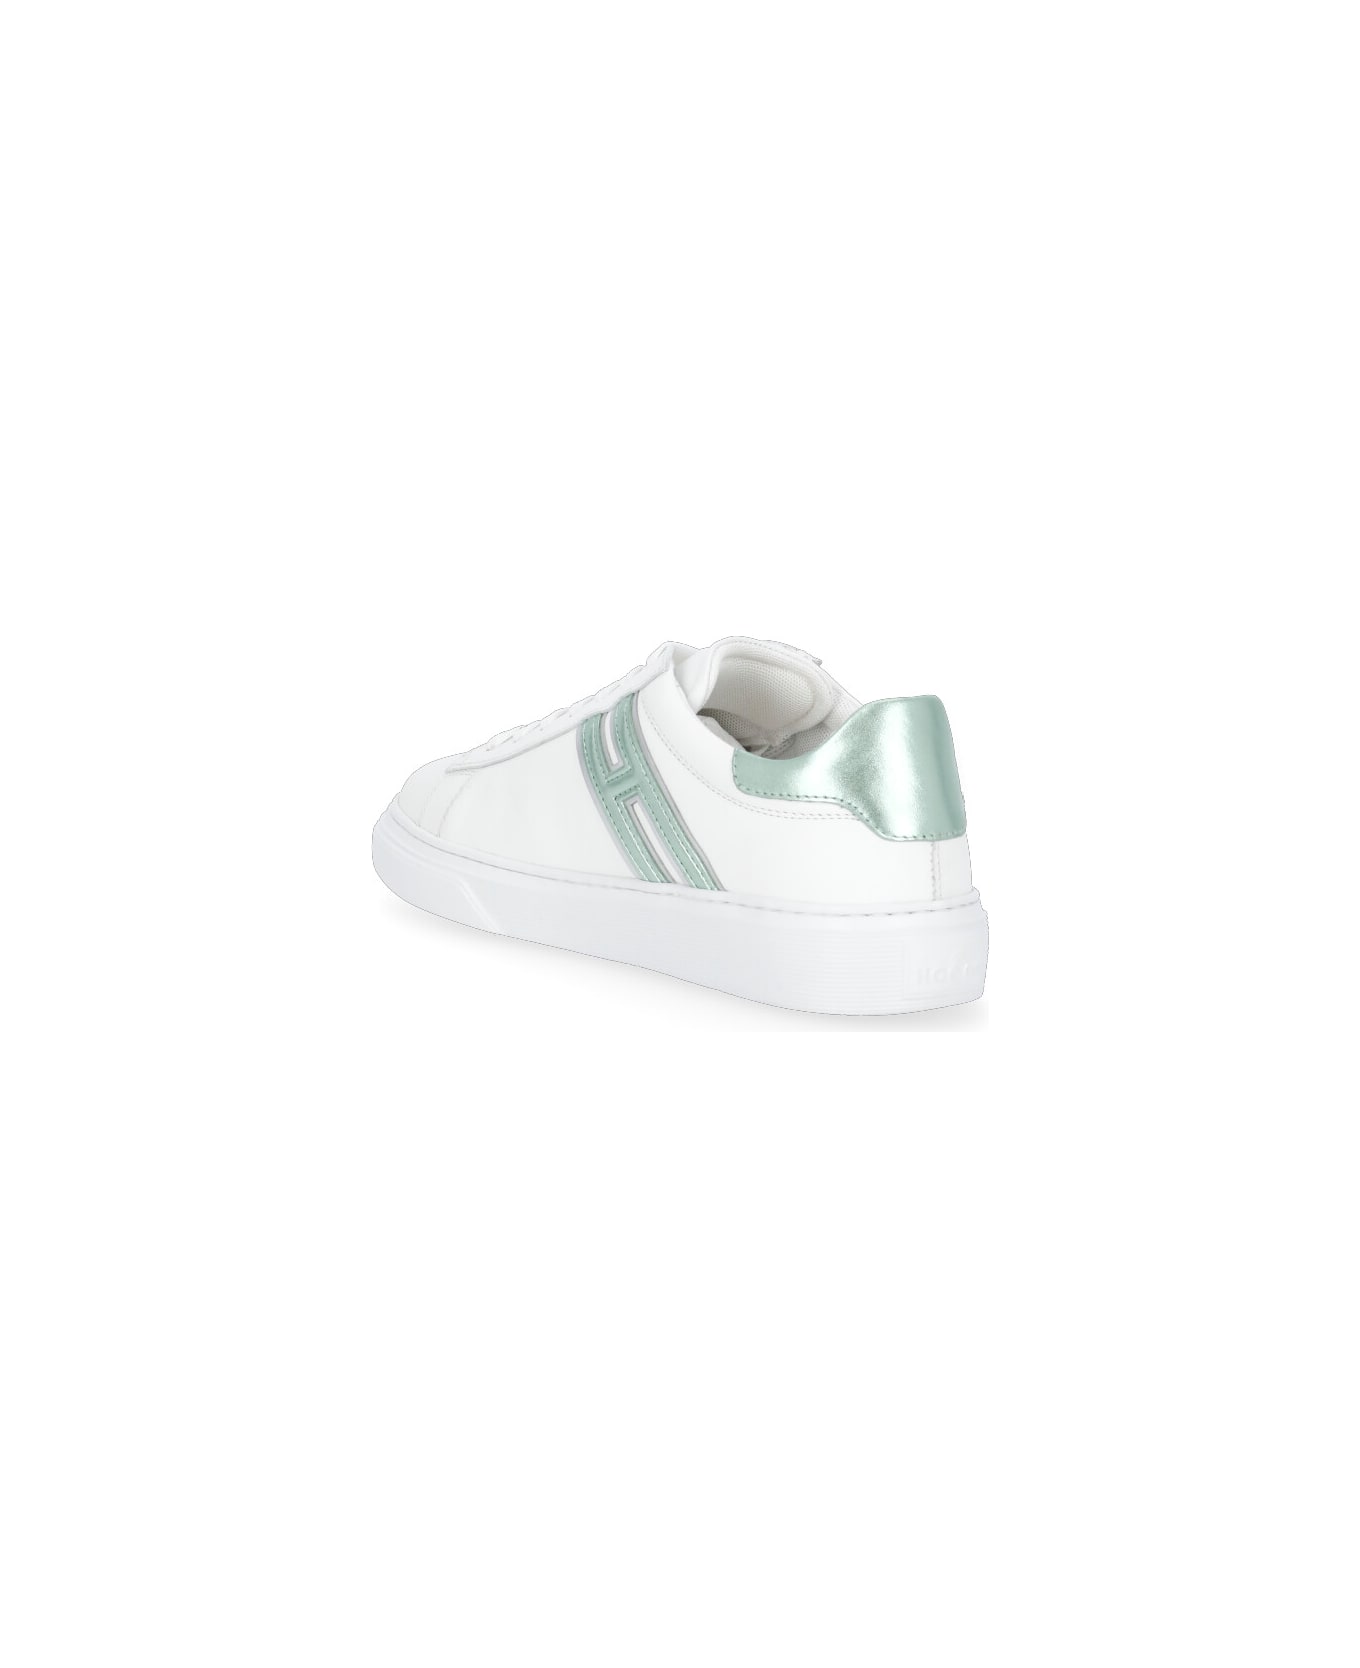 Hogan H365 Sneakers - Green/white スニーカー